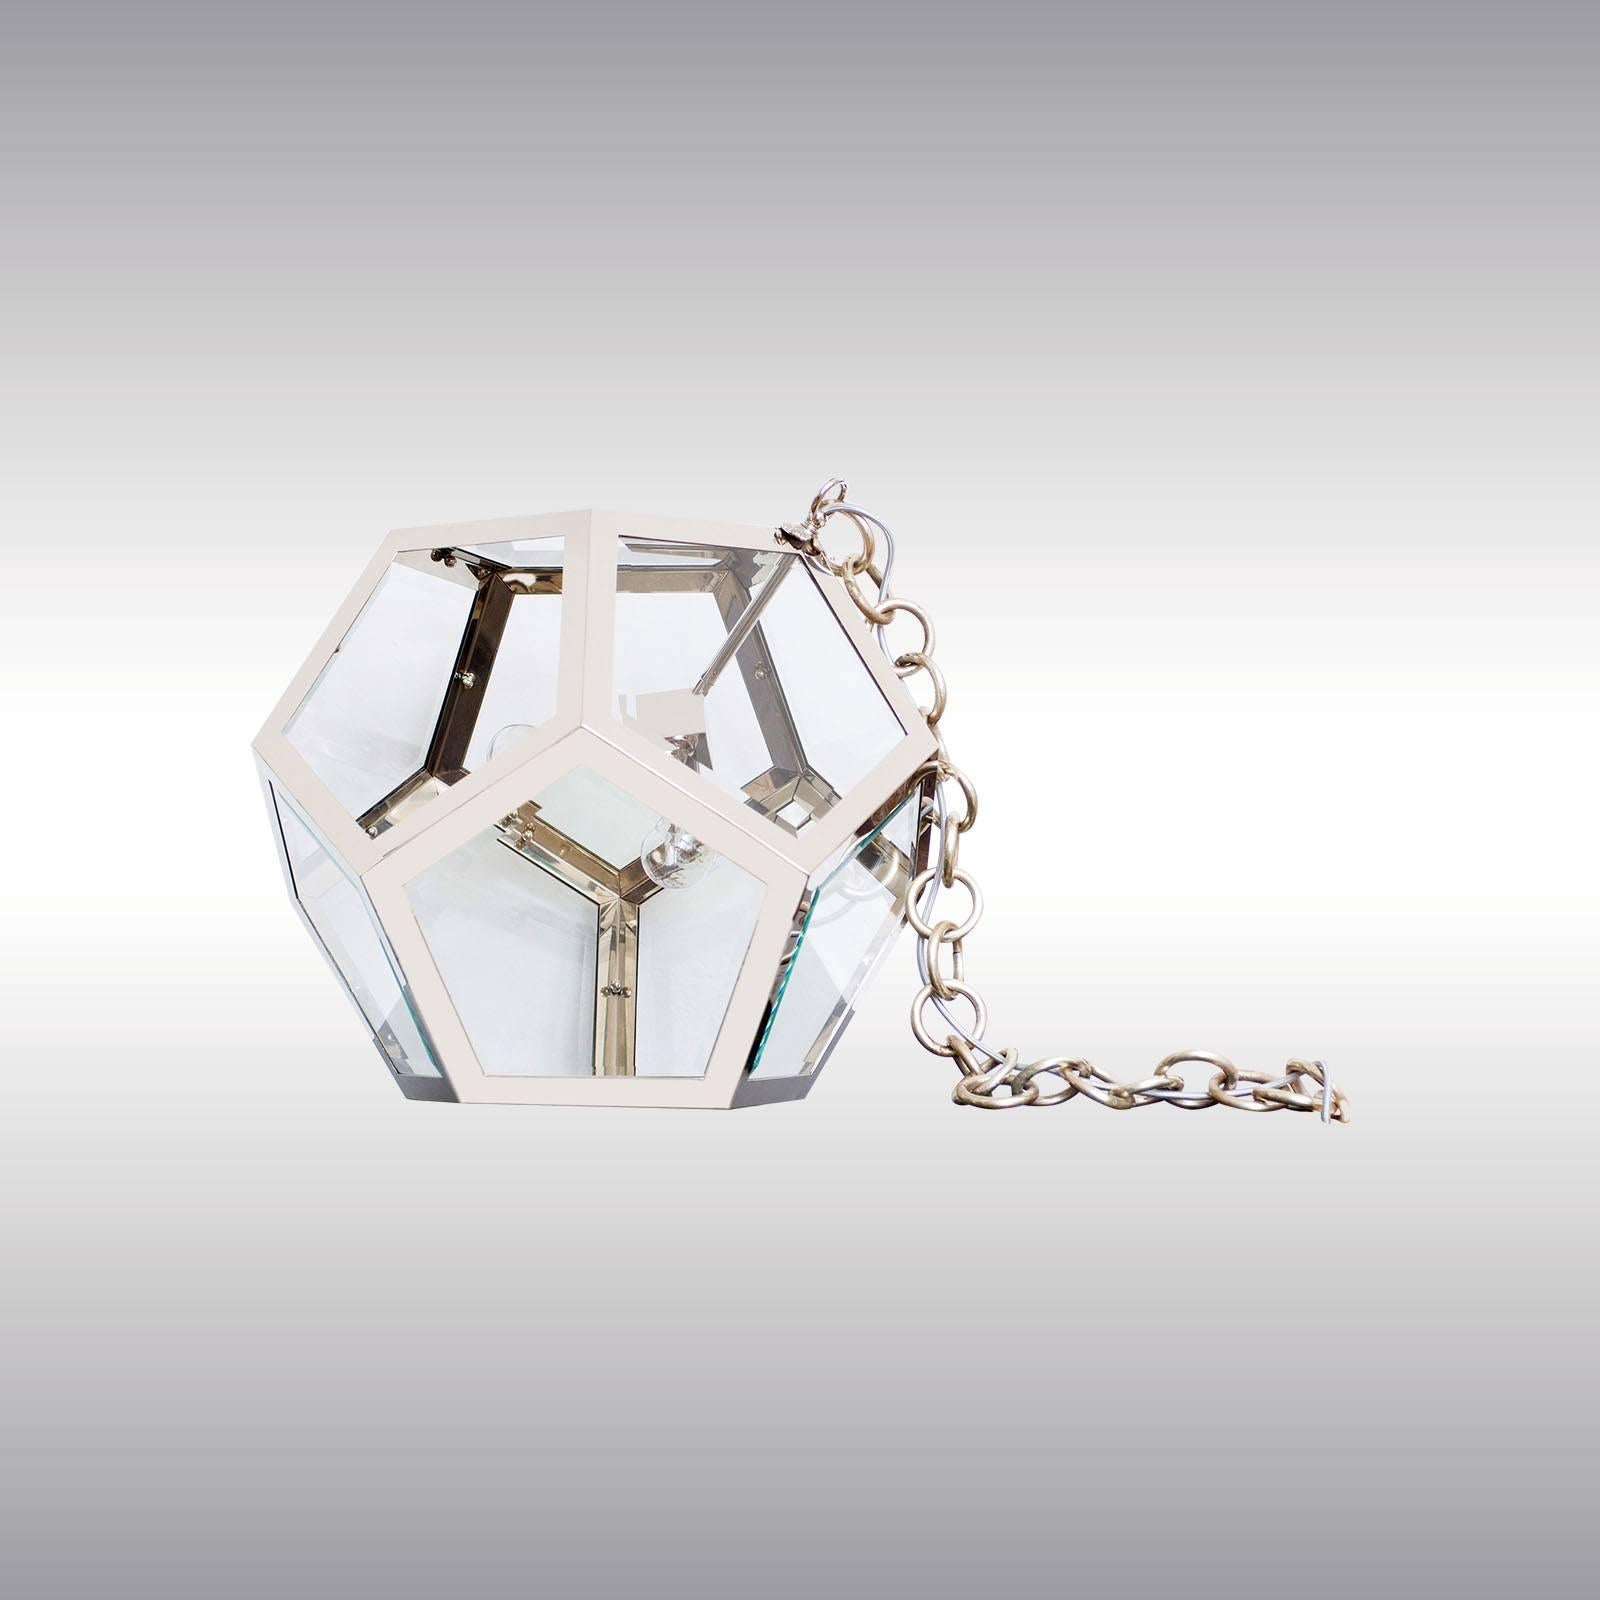 Pentagondodekaeder, une boule composée de pentagones. Conçu à l'origine par Adolf Loos pour les magasins Knize Talyor, il a été transformé en 2009 par Christiane Buessgen en lampe de table ou en lampadaire. Mesure : 35 de diamètre.

Également